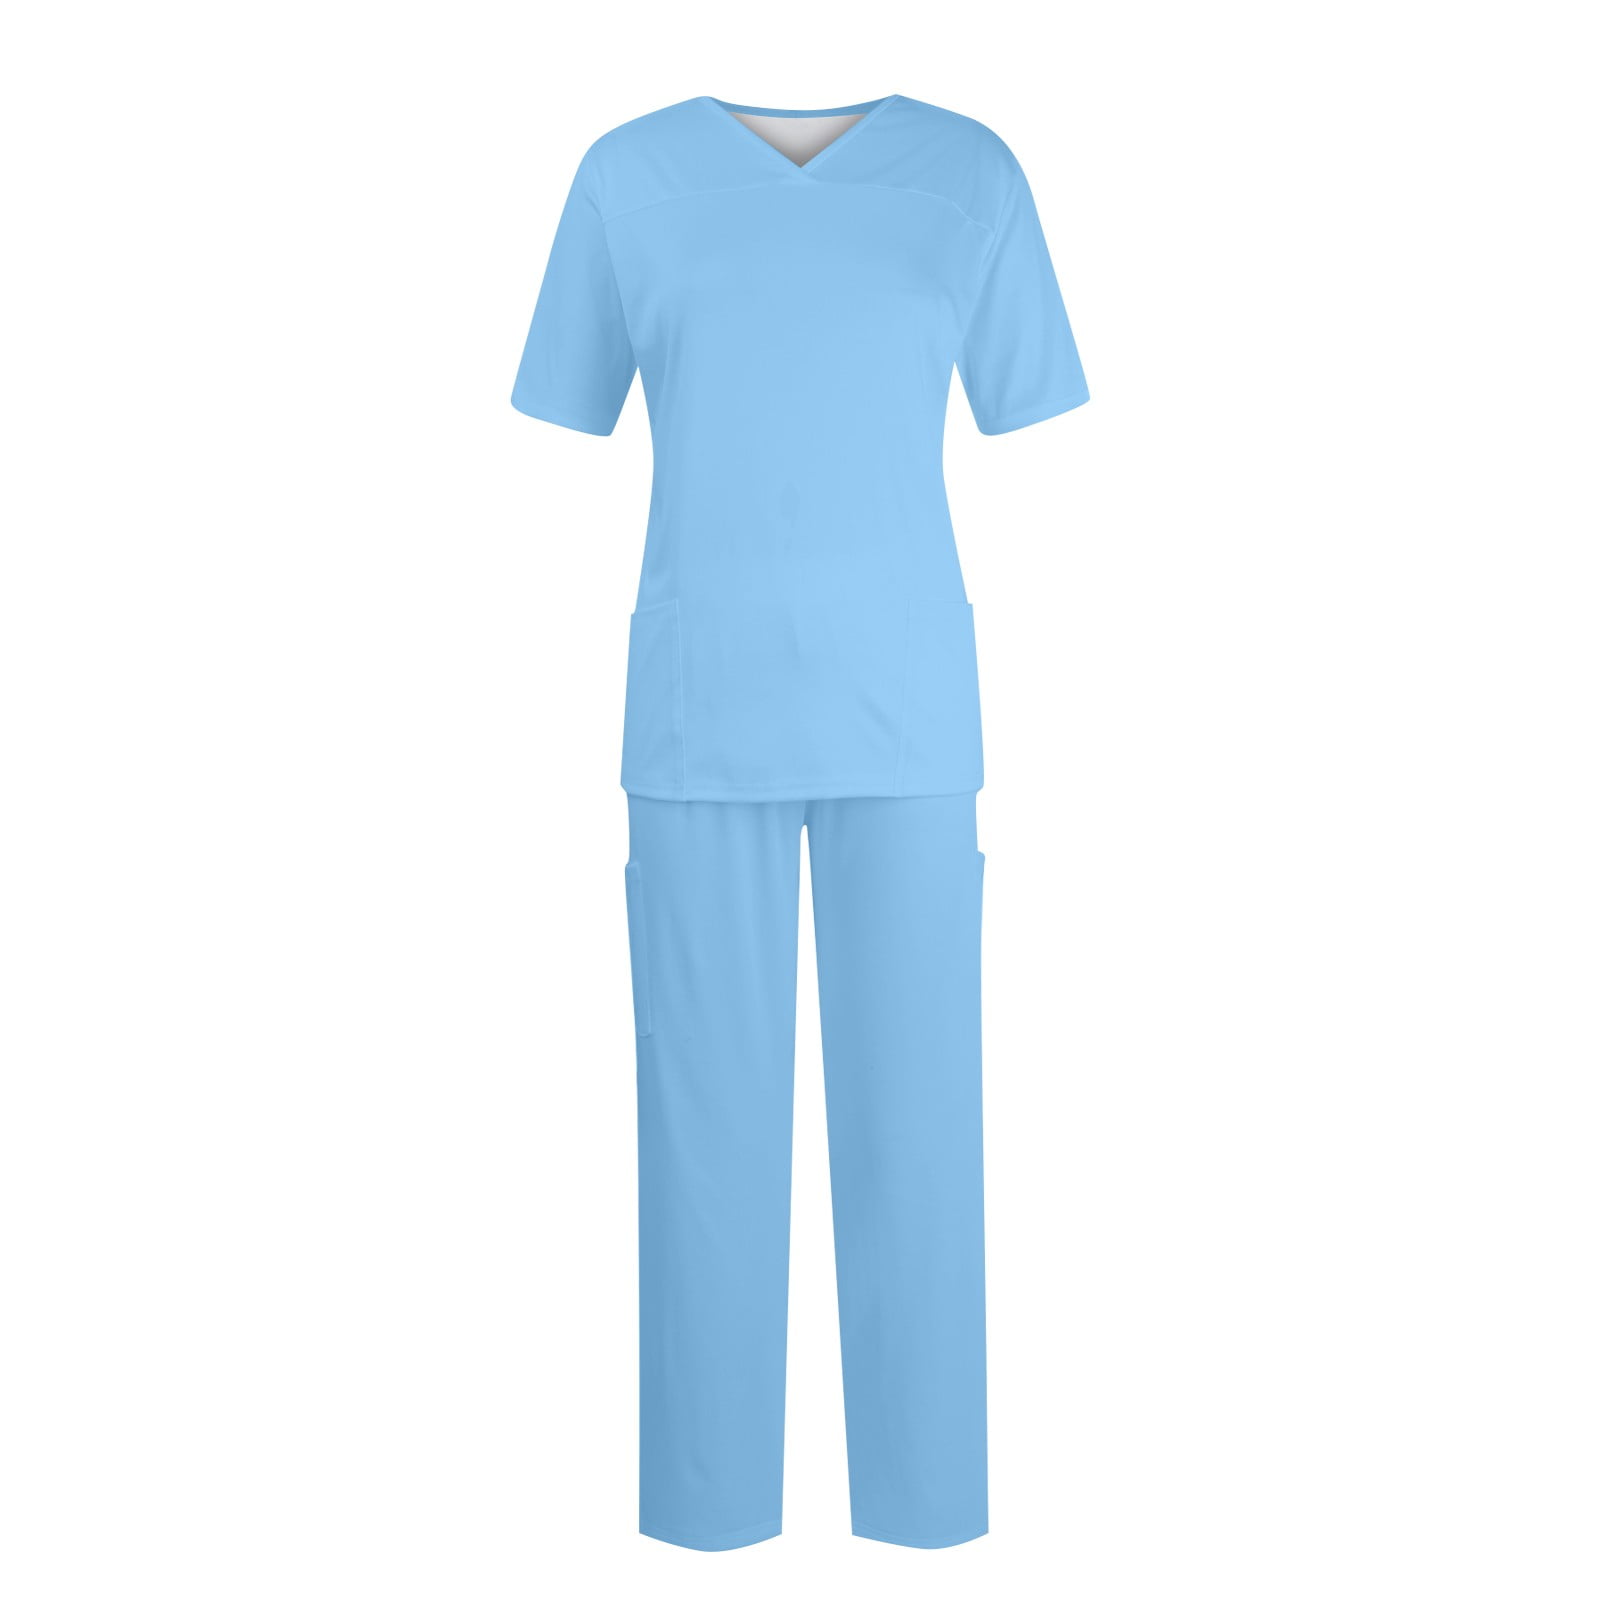 EHTMSAK Petite Scrubs For Women Sets Solid Plus Size Nursing Uniform ...